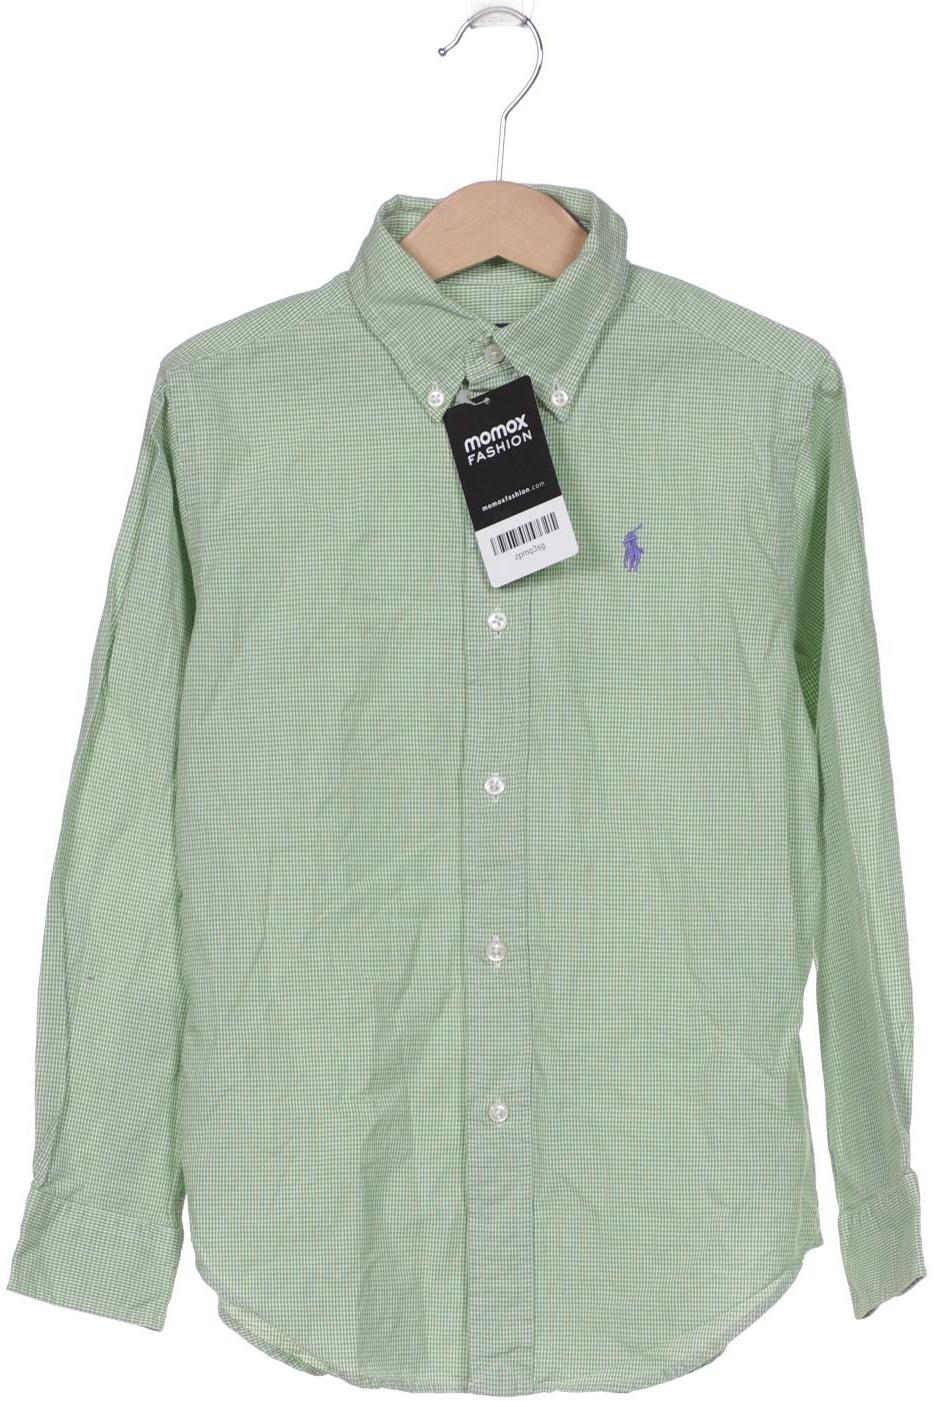 Polo Ralph Lauren Jungen Hemd, grün von Polo Ralph Lauren